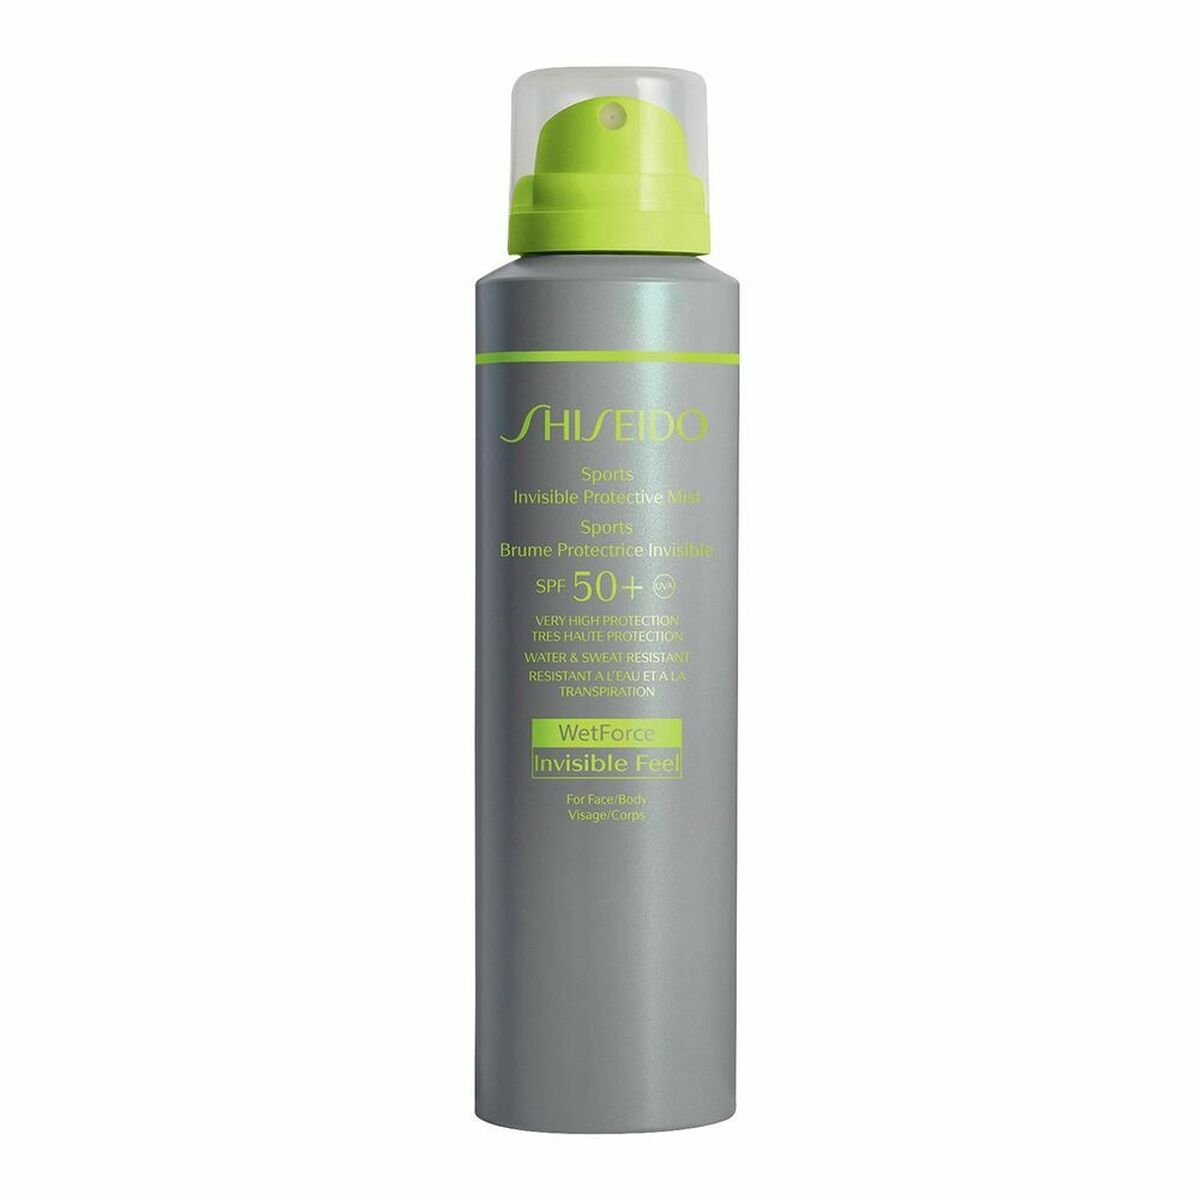 Spray Sun Protector Sports Invisible Shiseido SPF 50+ 